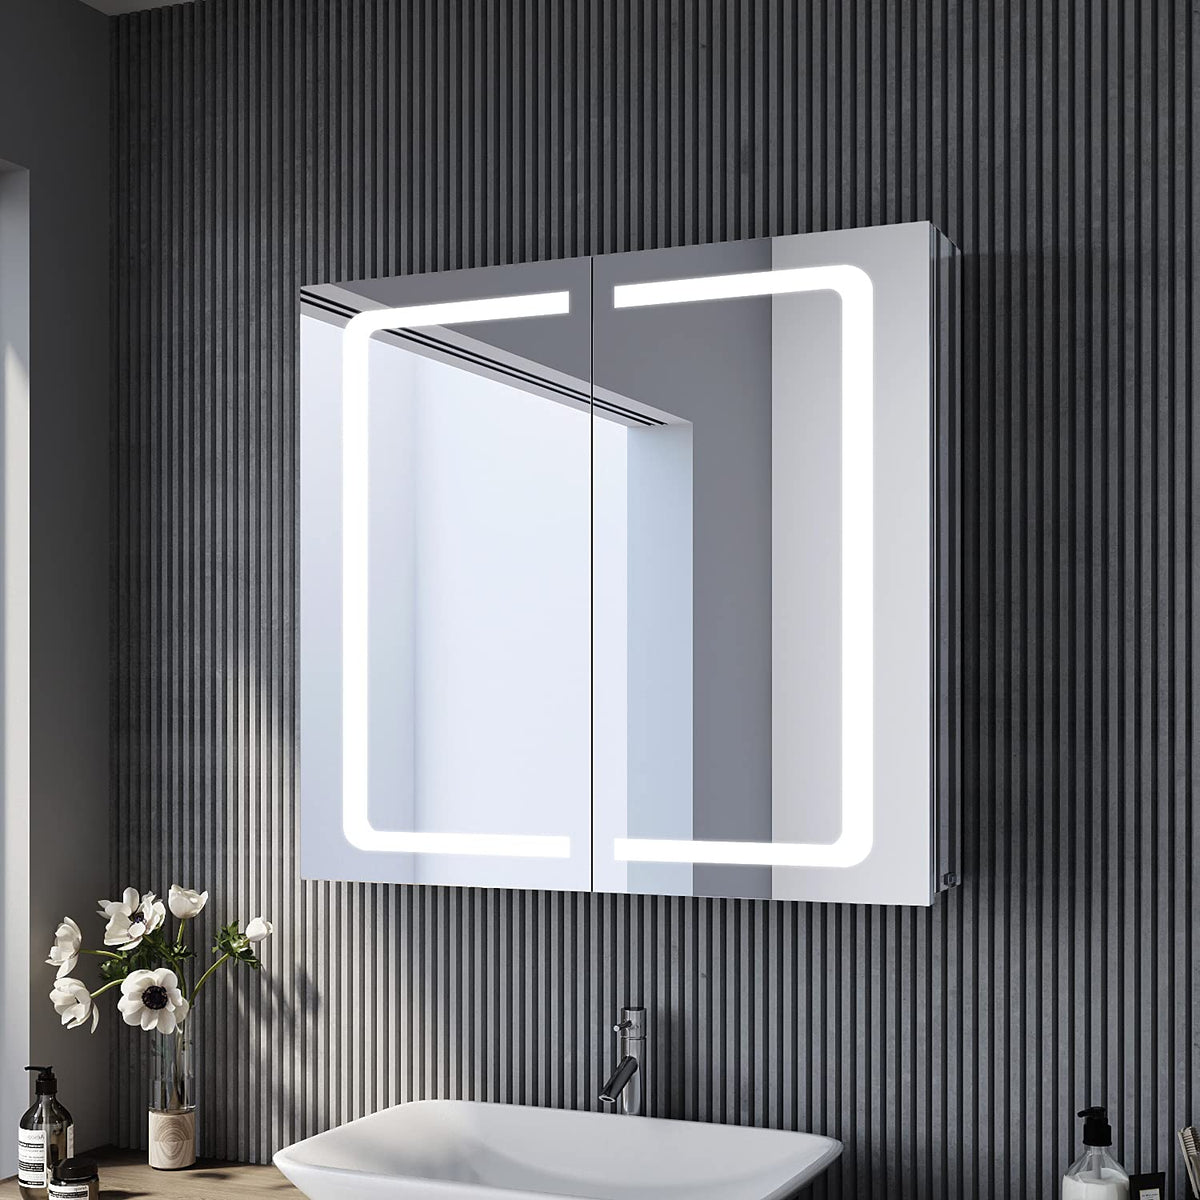 SONNI  Edelstahl LED Spiegelschrank mit Beleuchtung, Steckdose und Kippschalter fürs Badezimmer 70x65 cm